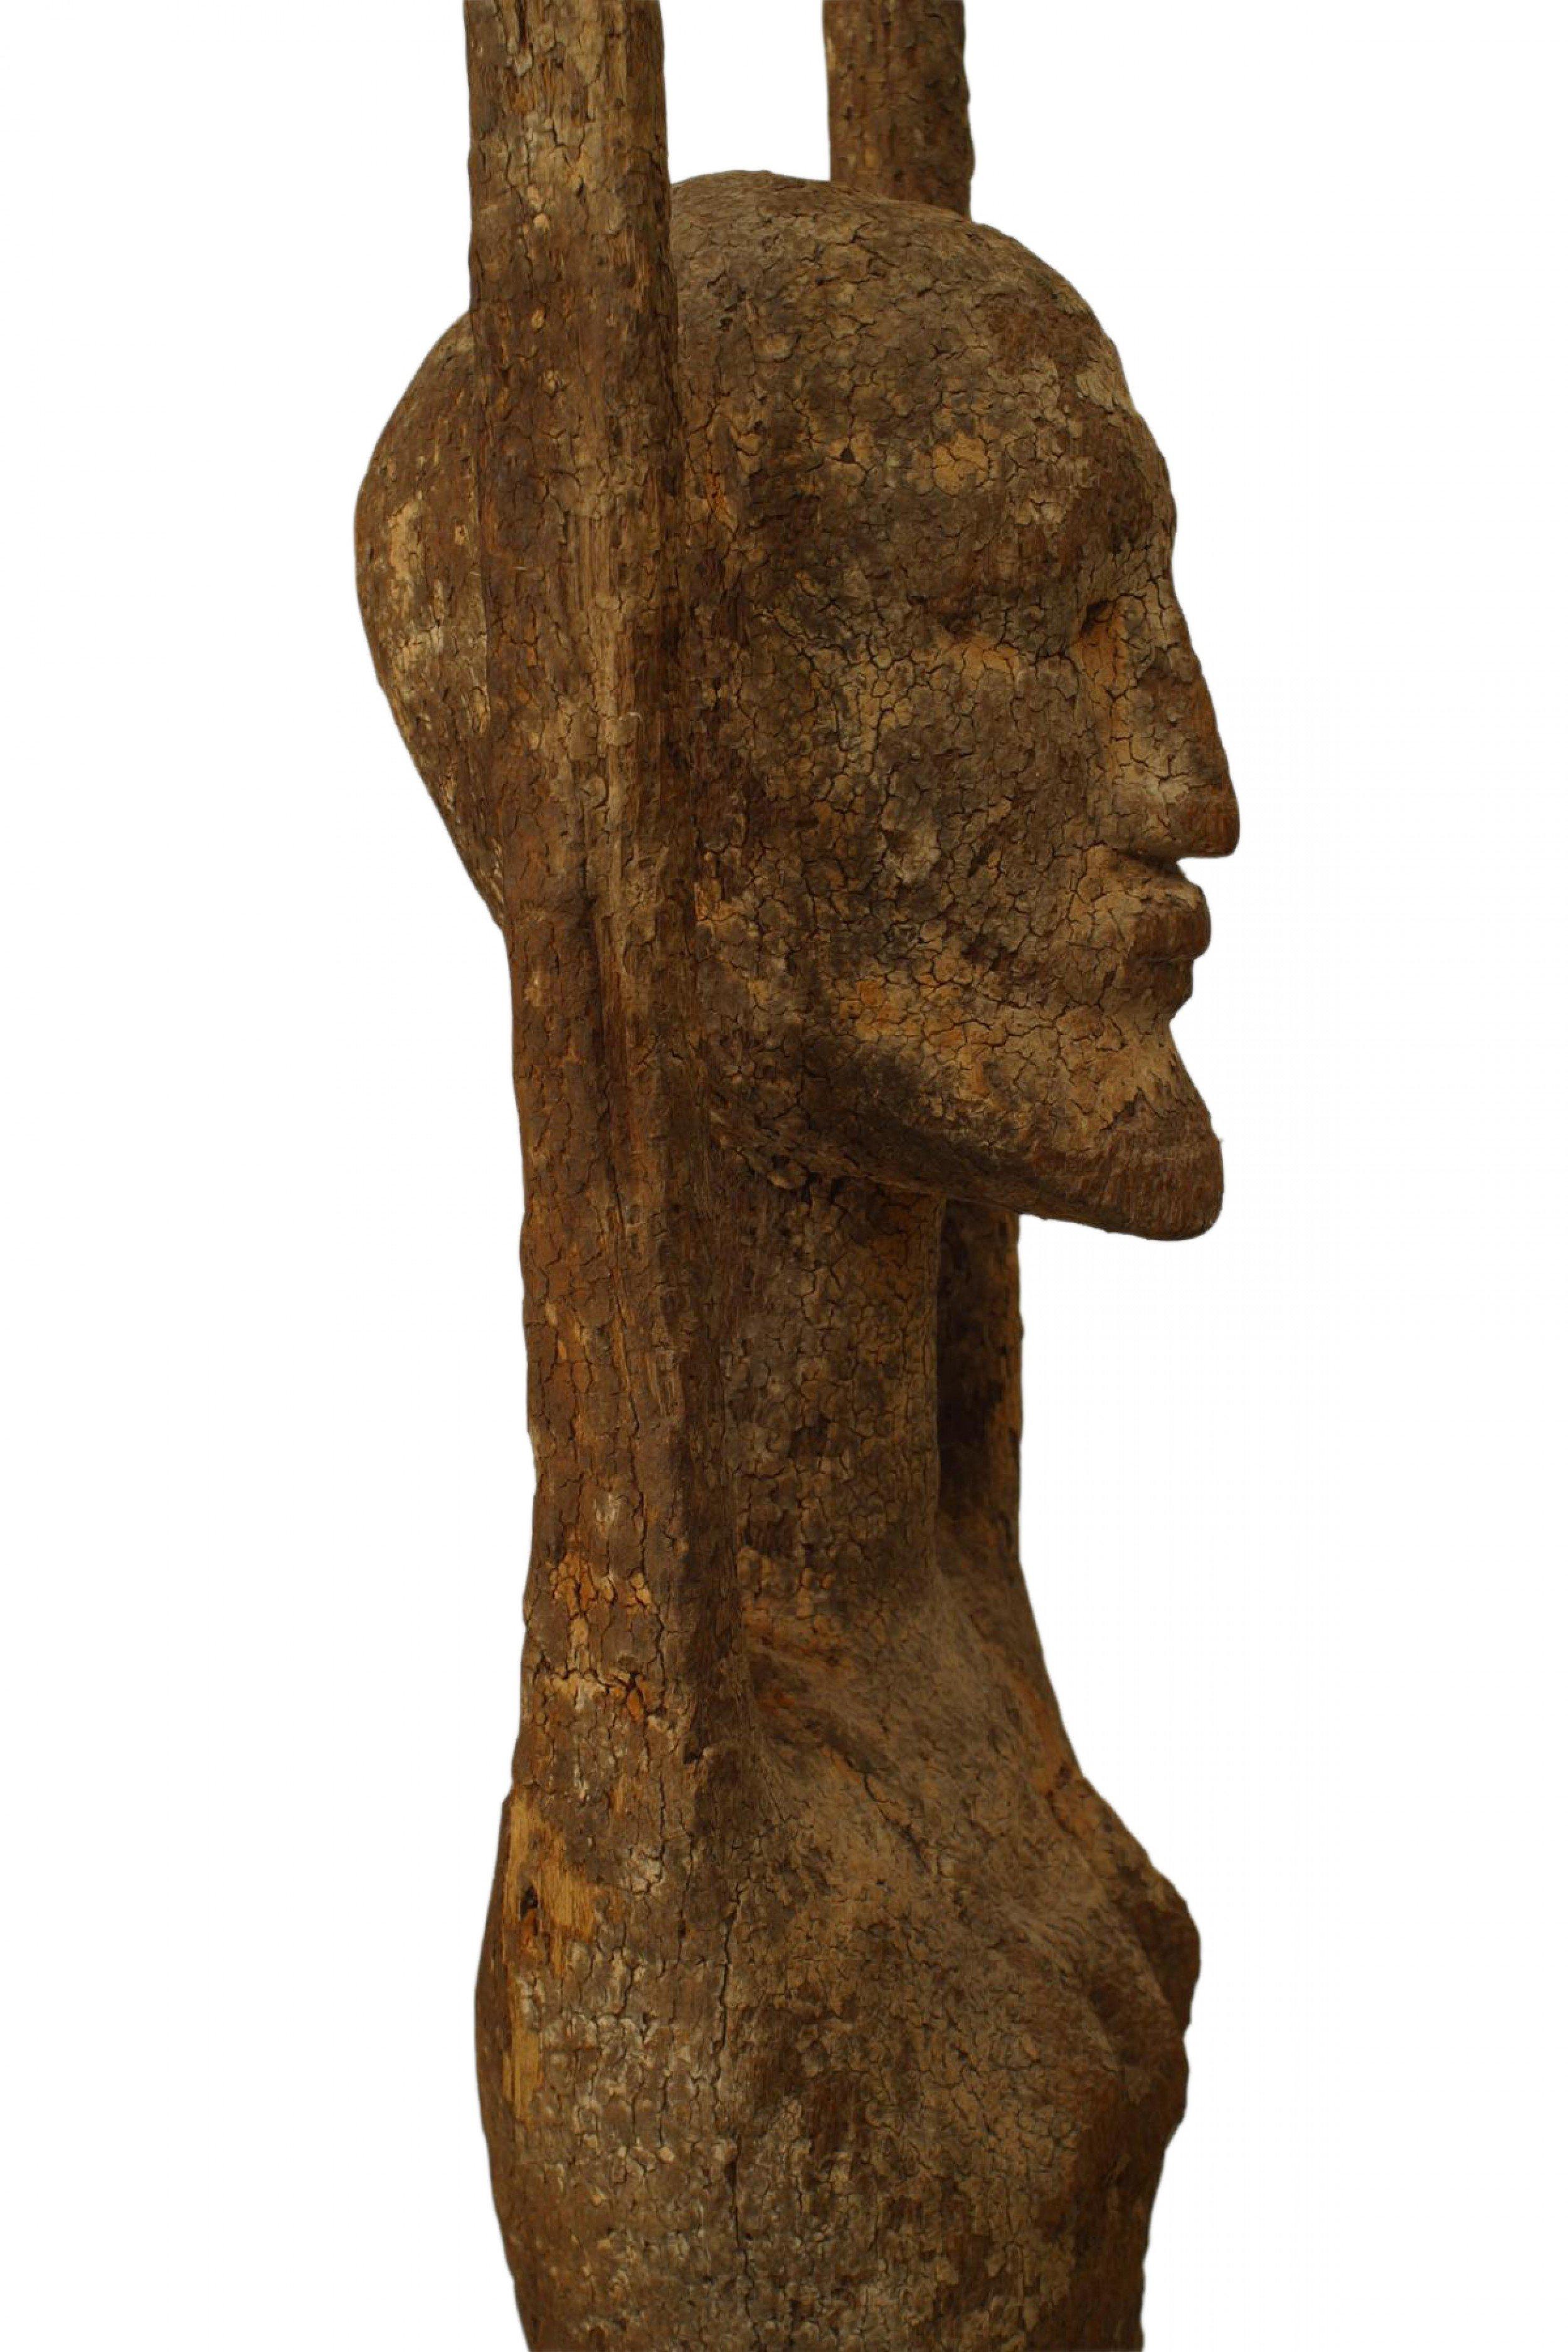 Afrikanische holzgeschnitzte Aktfigur eines Fruchtbarkeitsgottes (Dongo Mago) mit erhobenen Händen und auf einem ebonisierten Sockel stehend (19. Jh.).
    